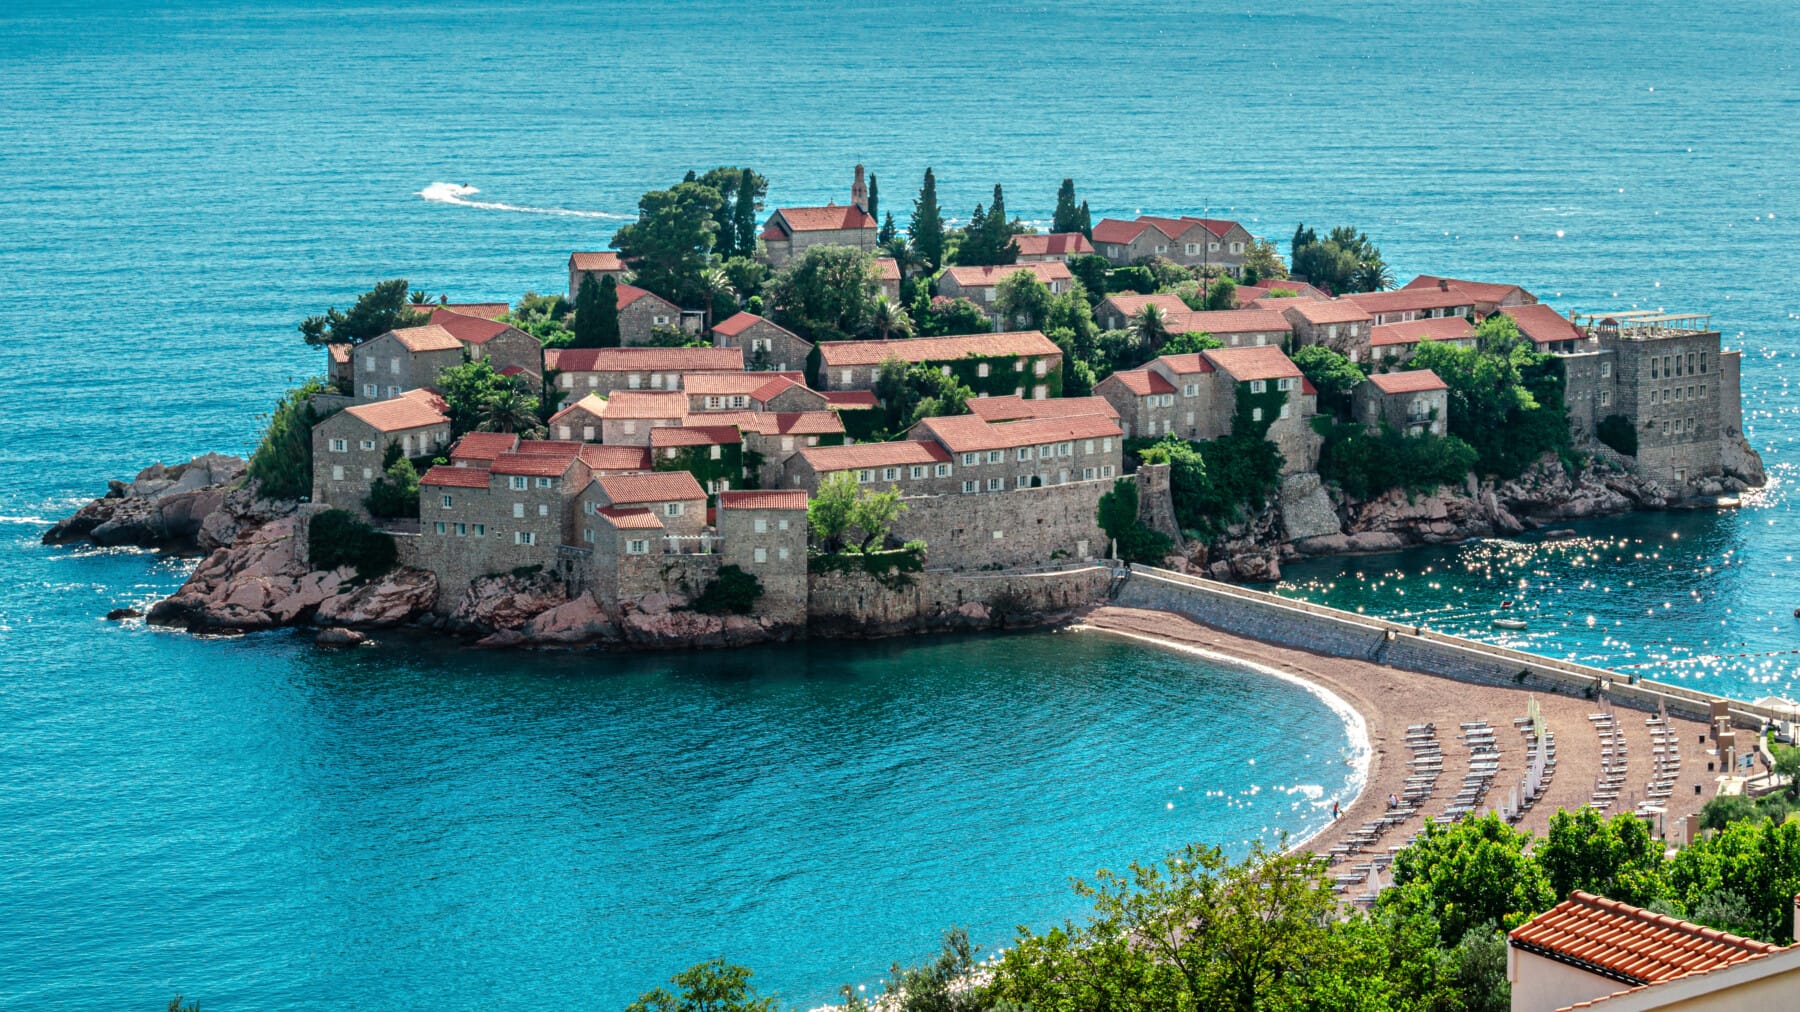 Sveti Stefan island in Budva in a beautiful summer day, Montenegro, Adriatic